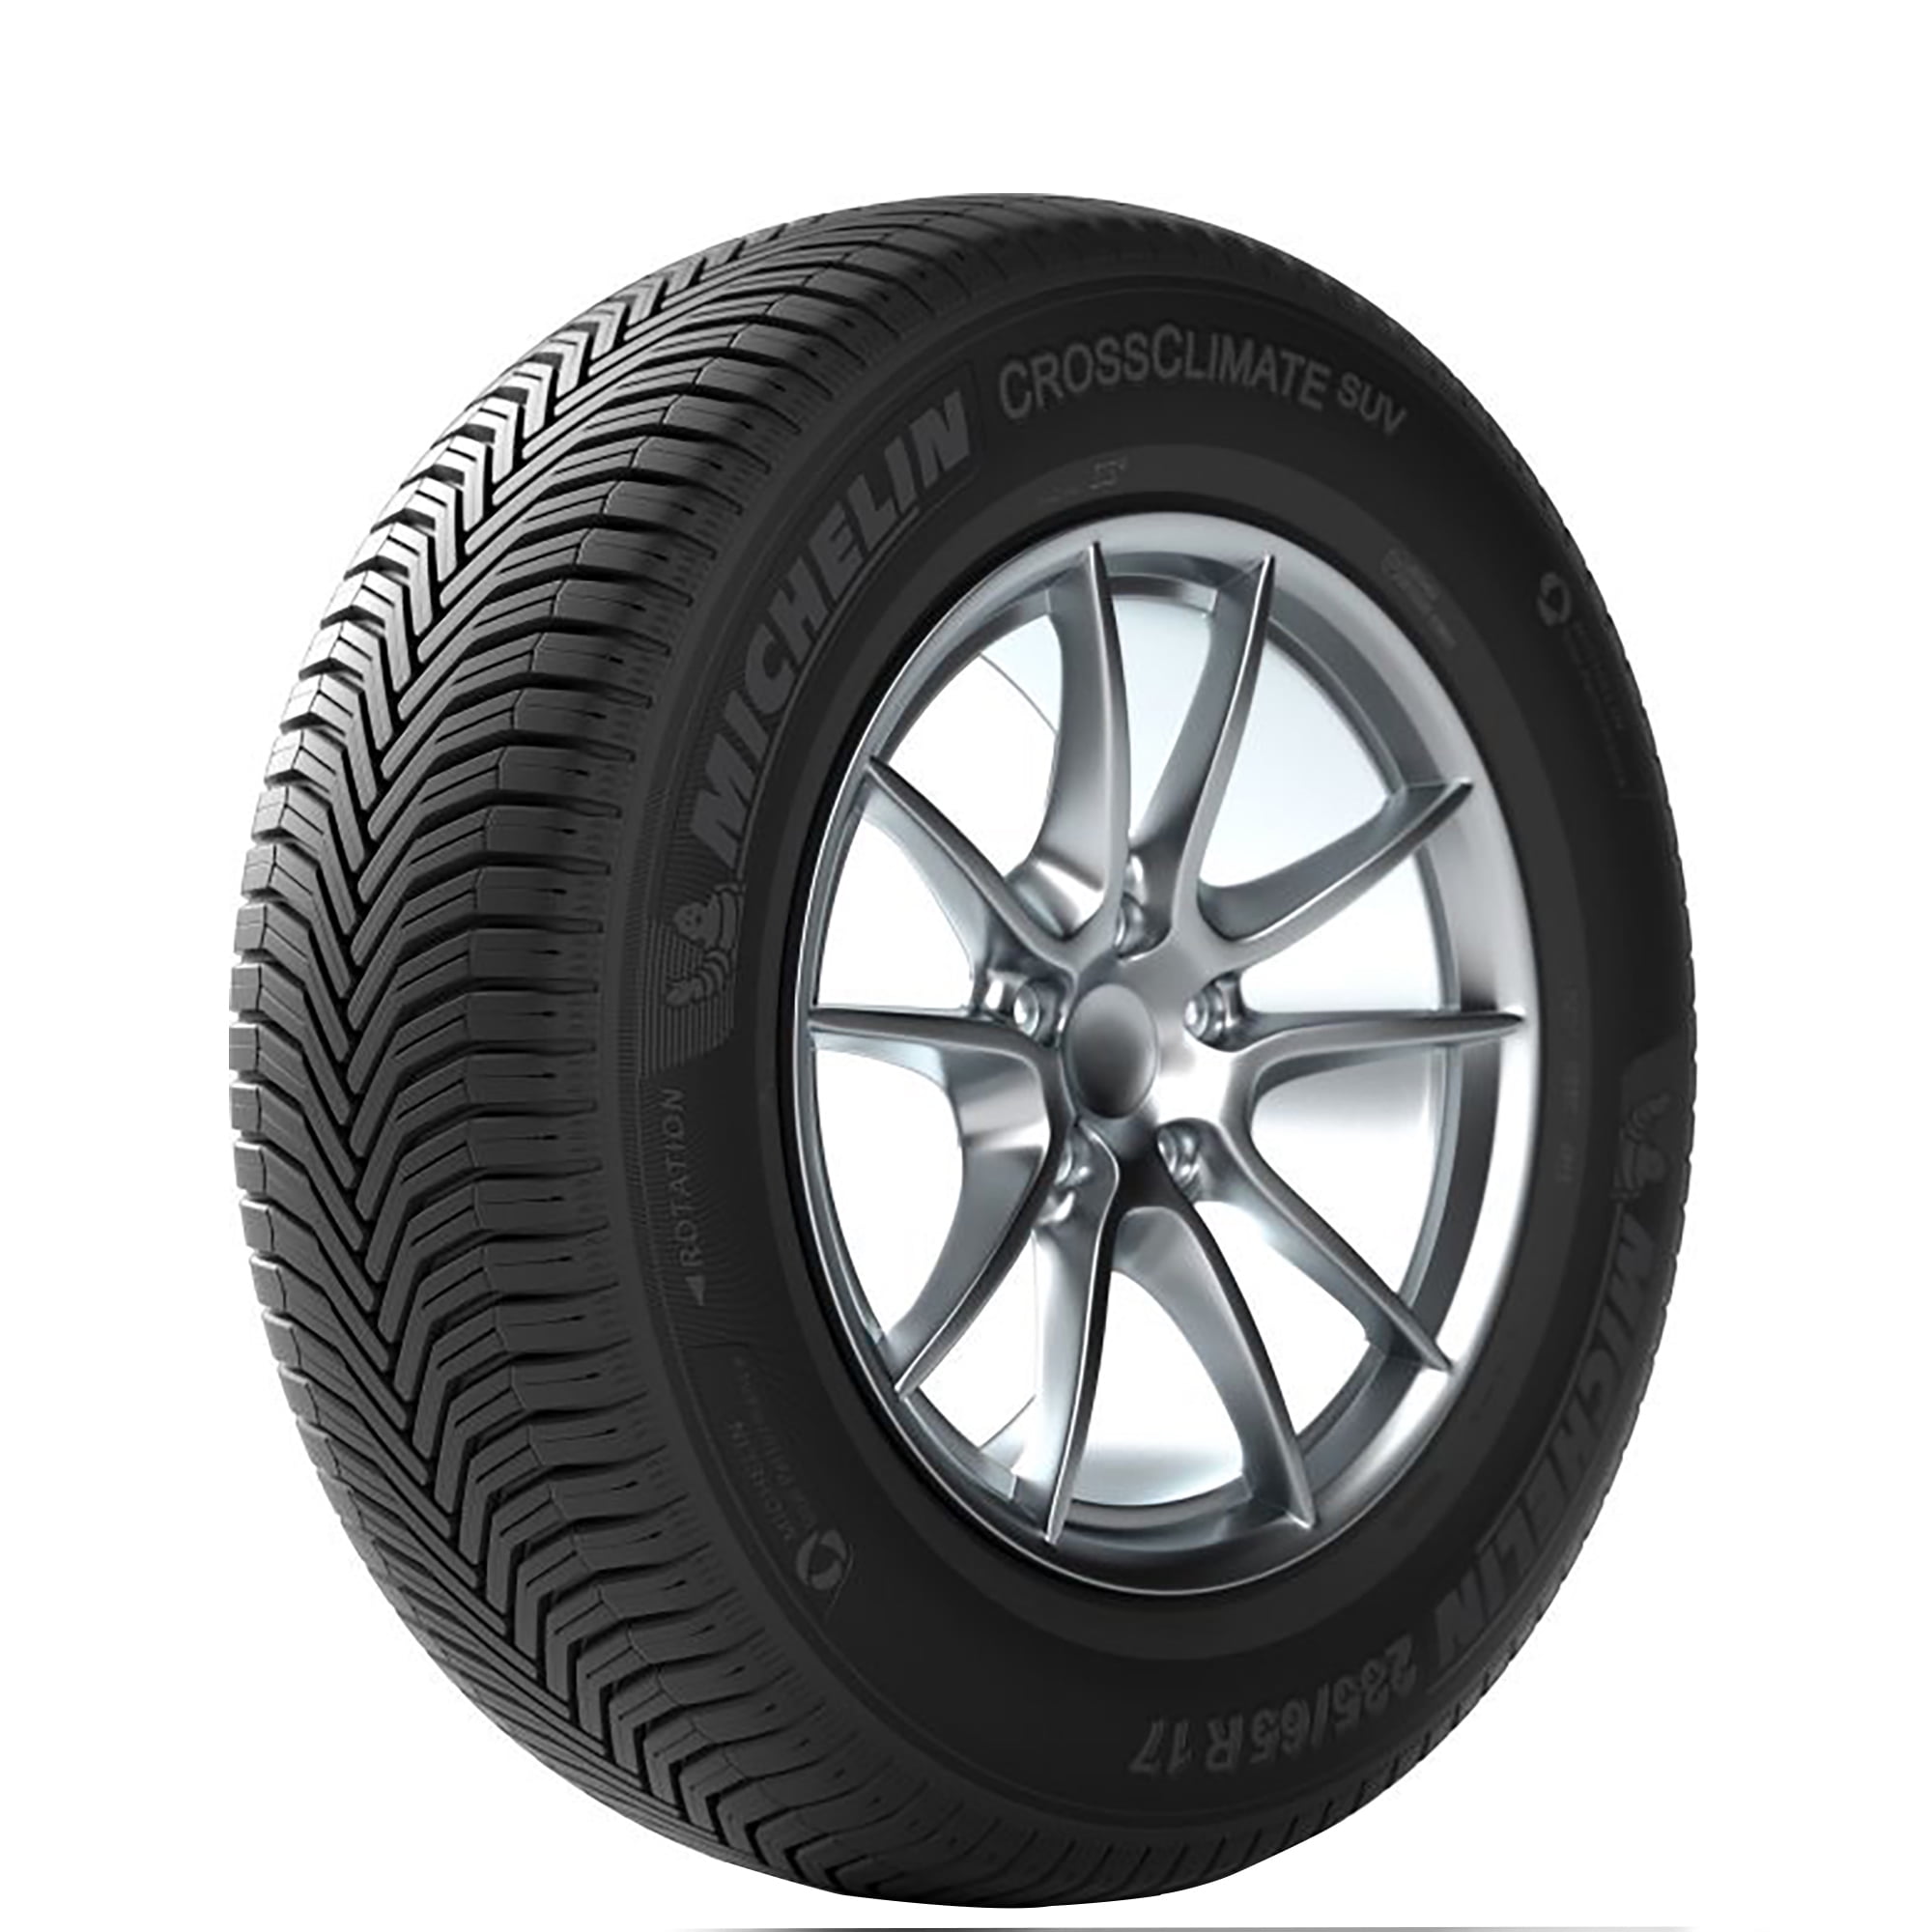 Michelin CrossClimate SUV 104 V 235/65-17 Tire